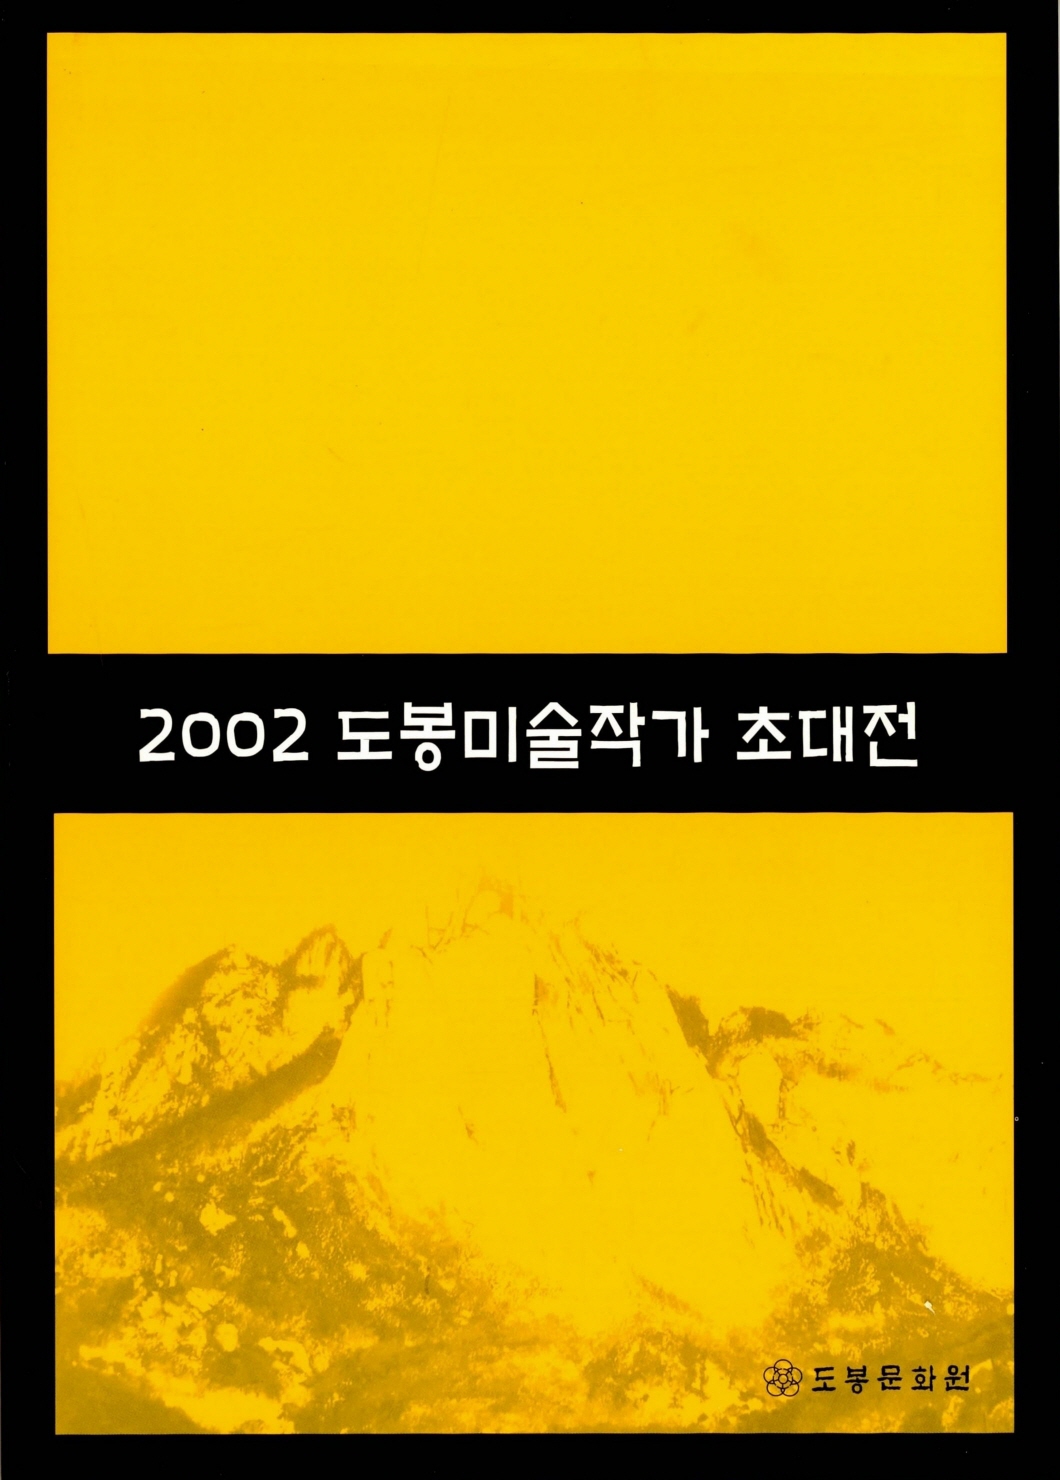 2002 도봉미술작가 초대전